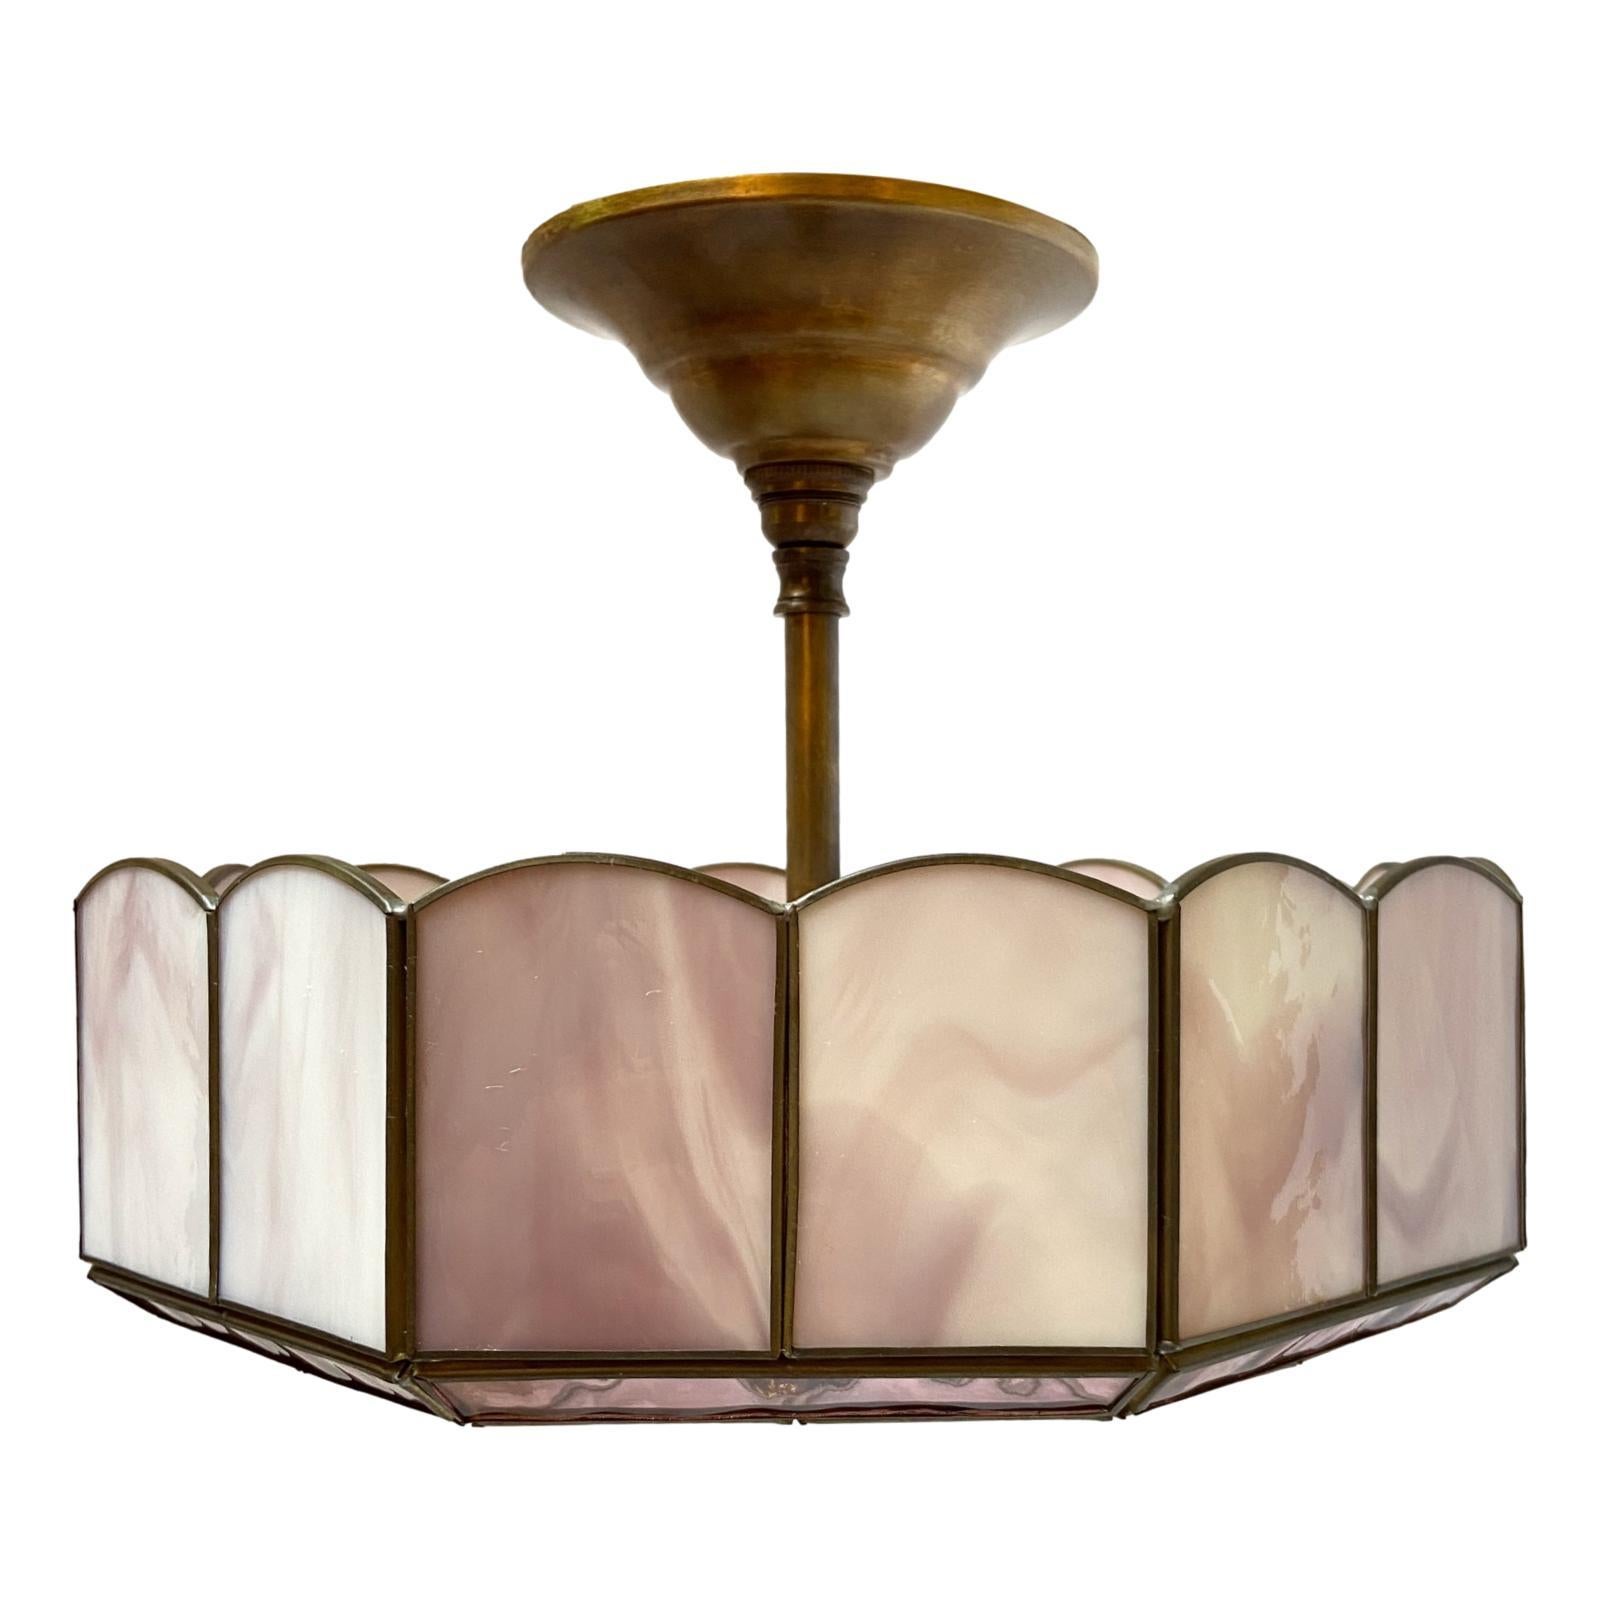 Un luminaire en verre plombé améthyste datant des années 1950 avec trois chandeliers intérieurs.

Mesures :
Diamètre : 13
Chute : 11